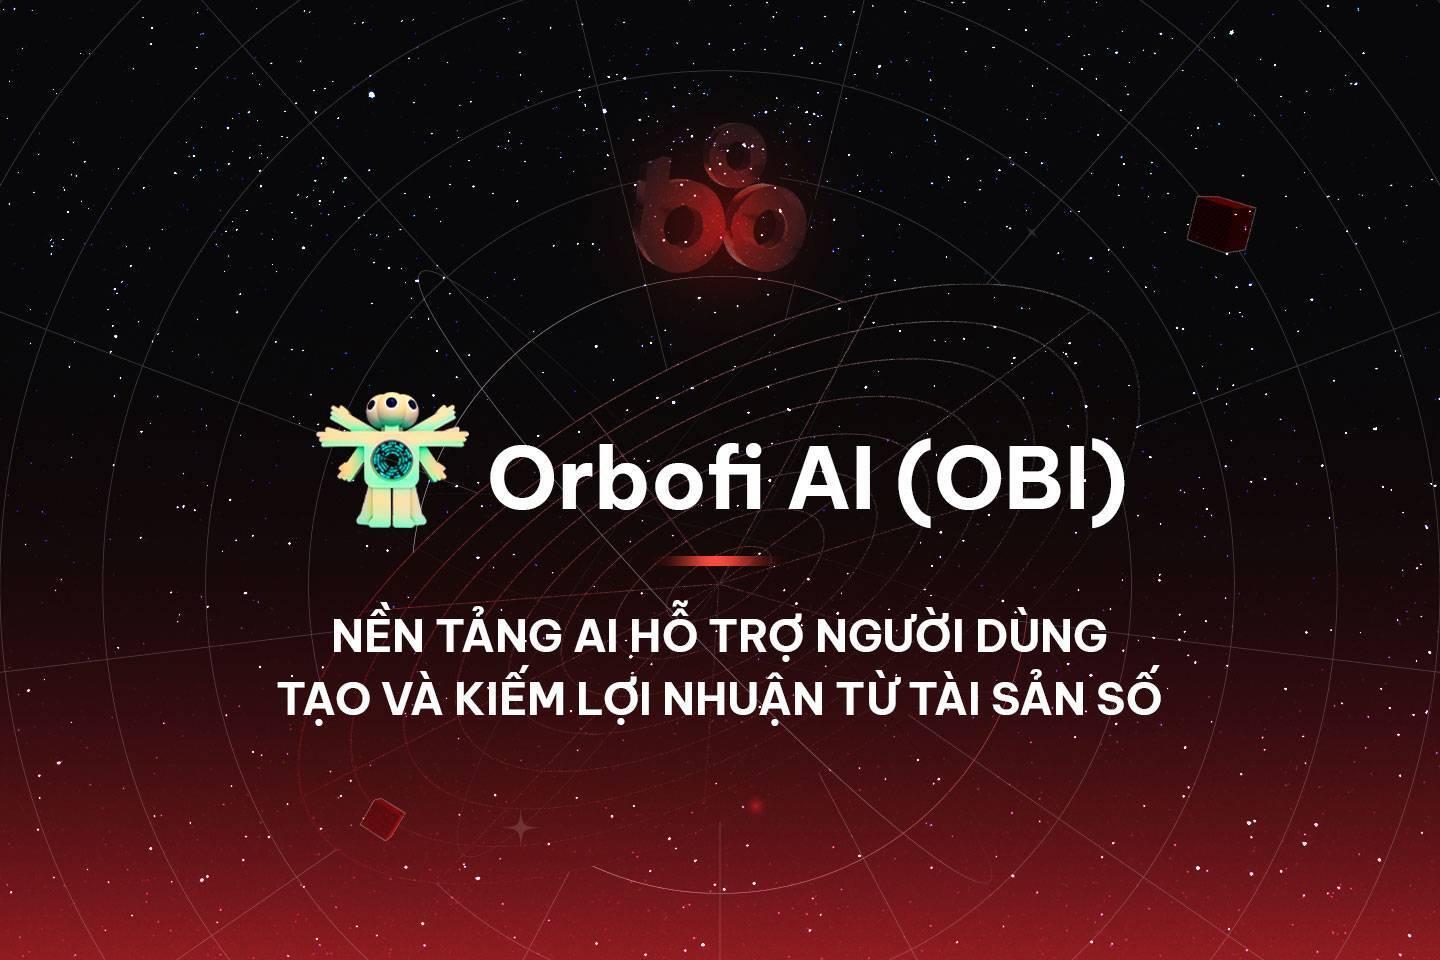 orbofi-ai-obi-nen-tang-ai-ho-tro-nguoi-dung-tao-va-kiem-loi-nhuan-tu-tai-san-so